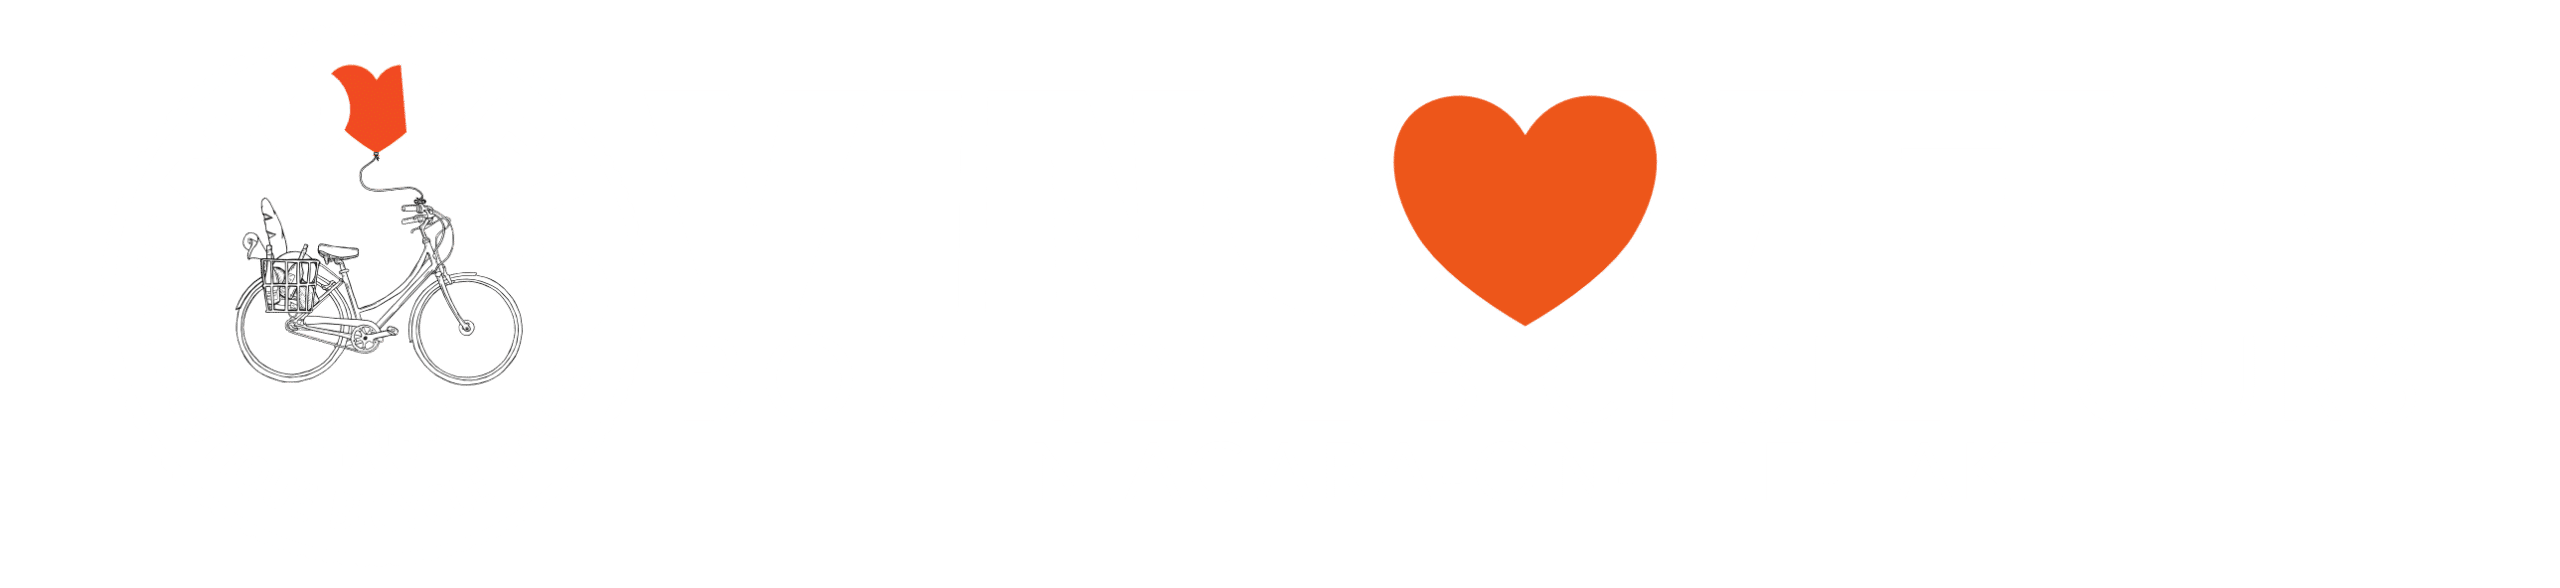 Vino Velo Boutique Bicycle Tours Niagara